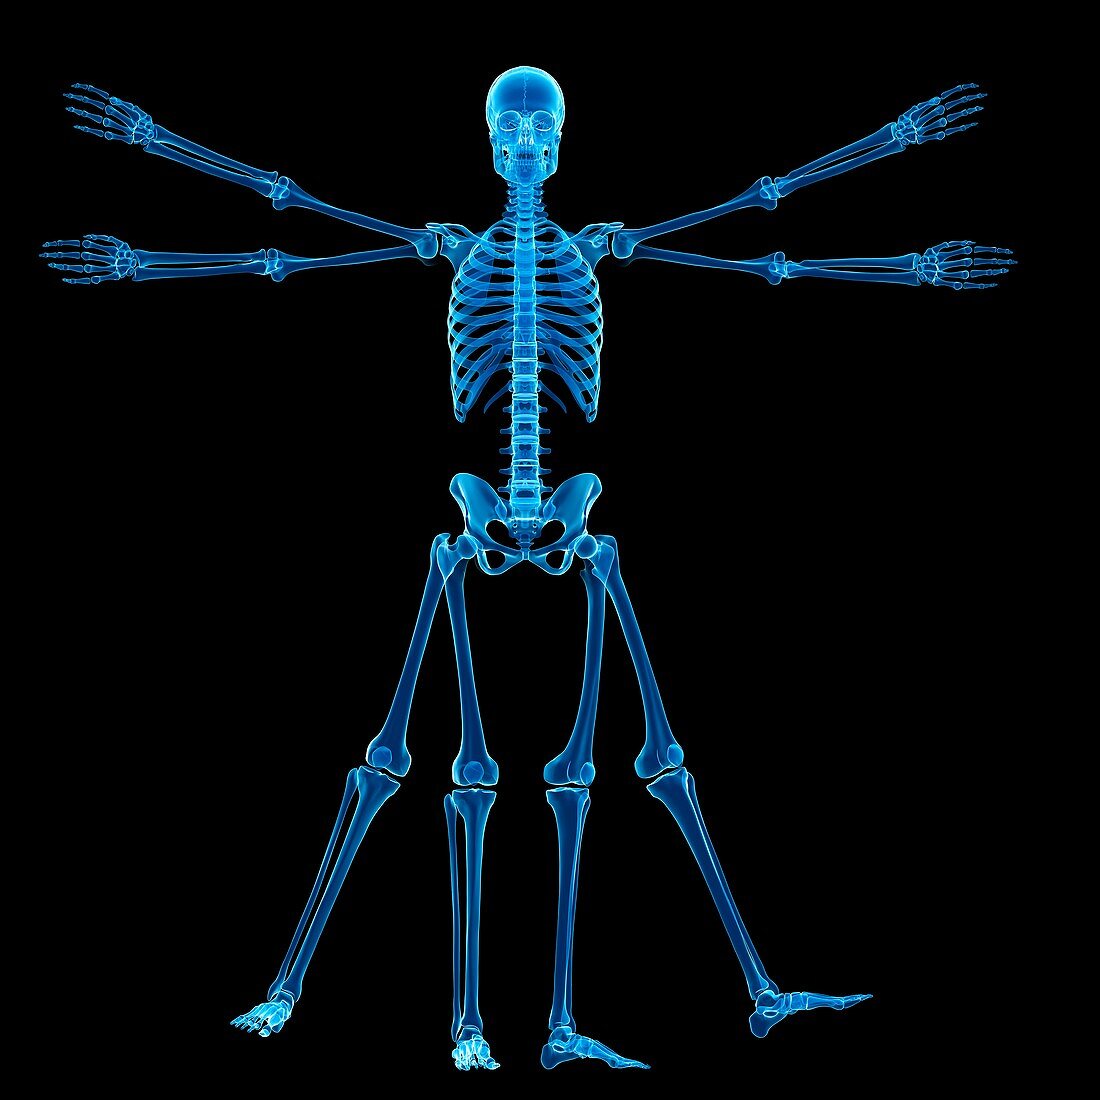 Vitruvian man skeleton,Illustration